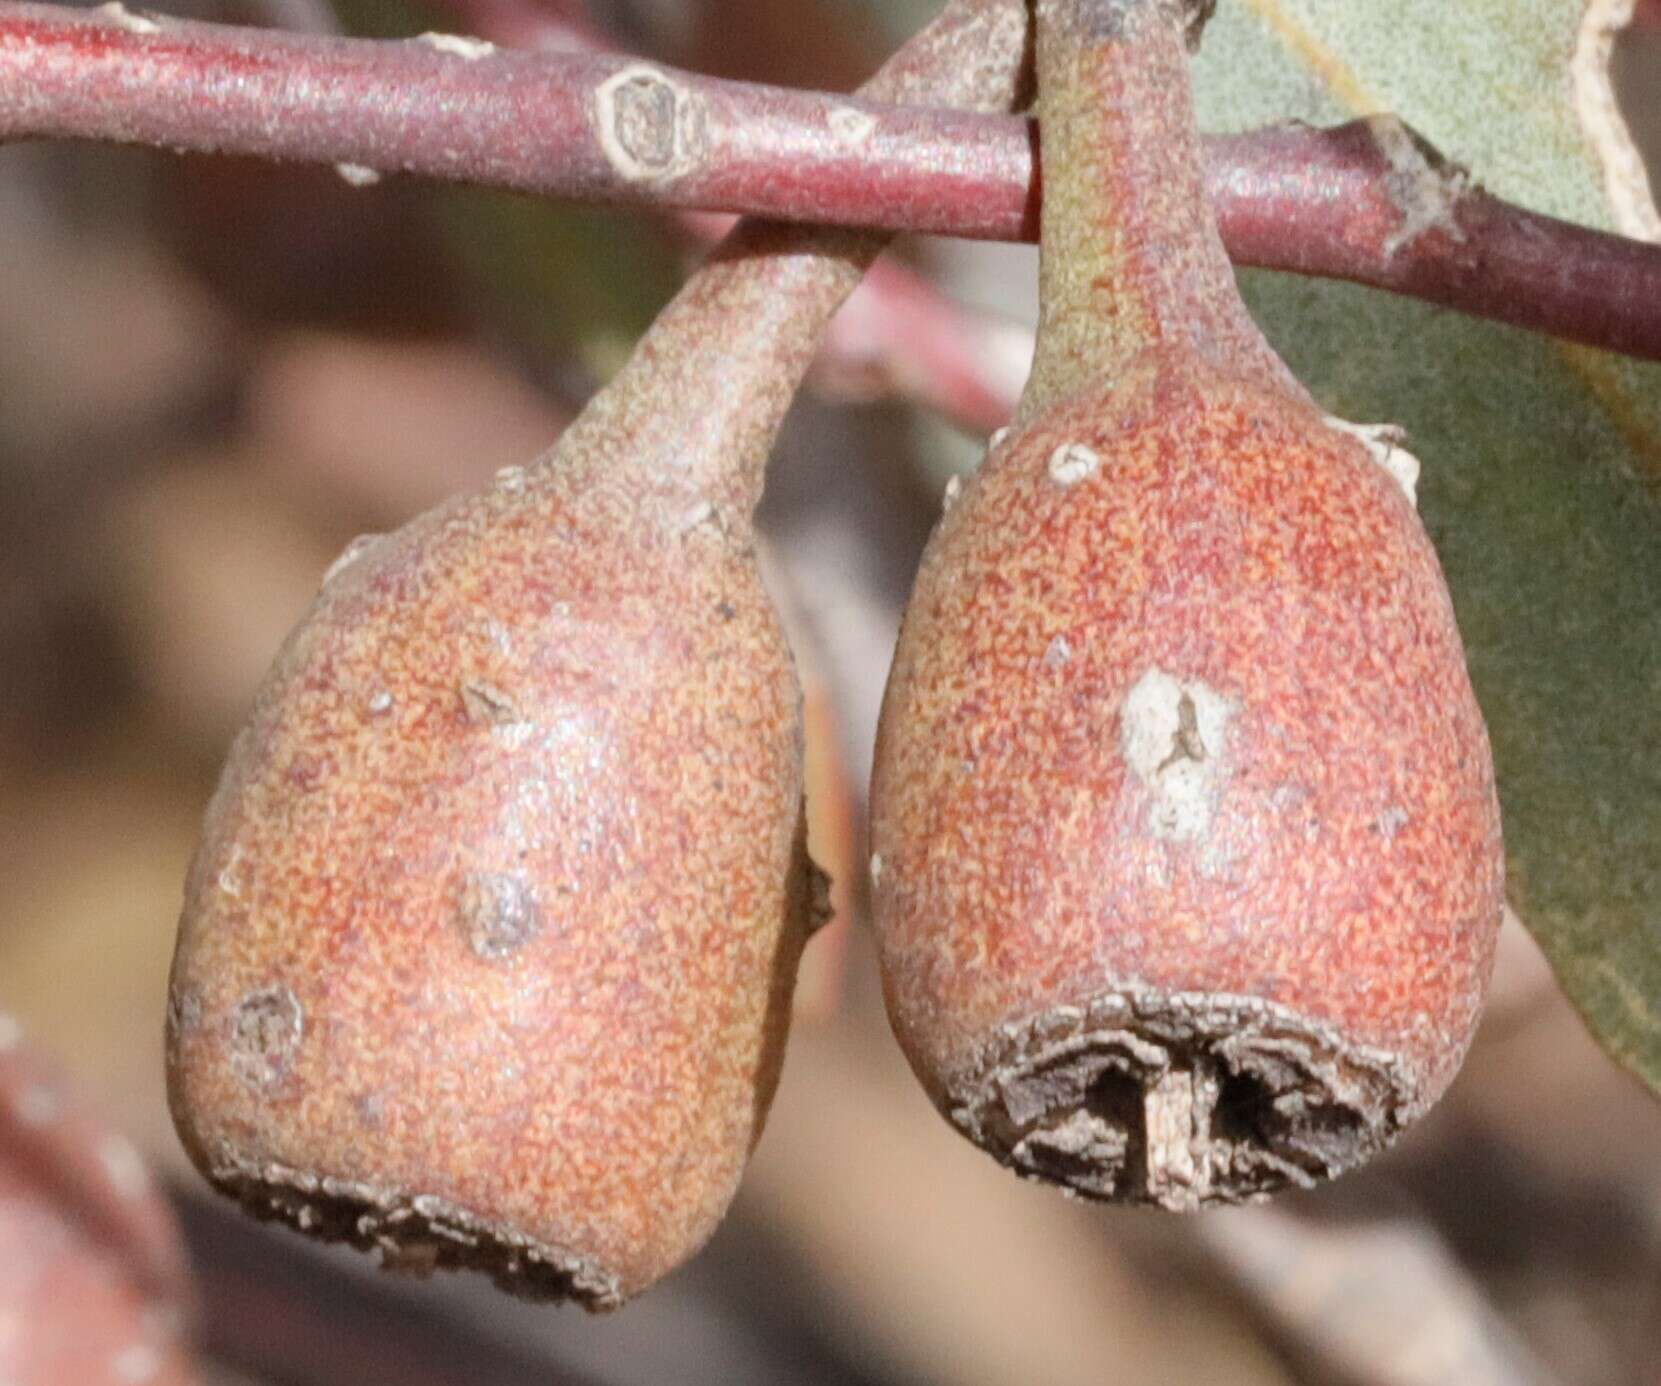 Image of Eucalyptus eremophila (Diels) Maiden